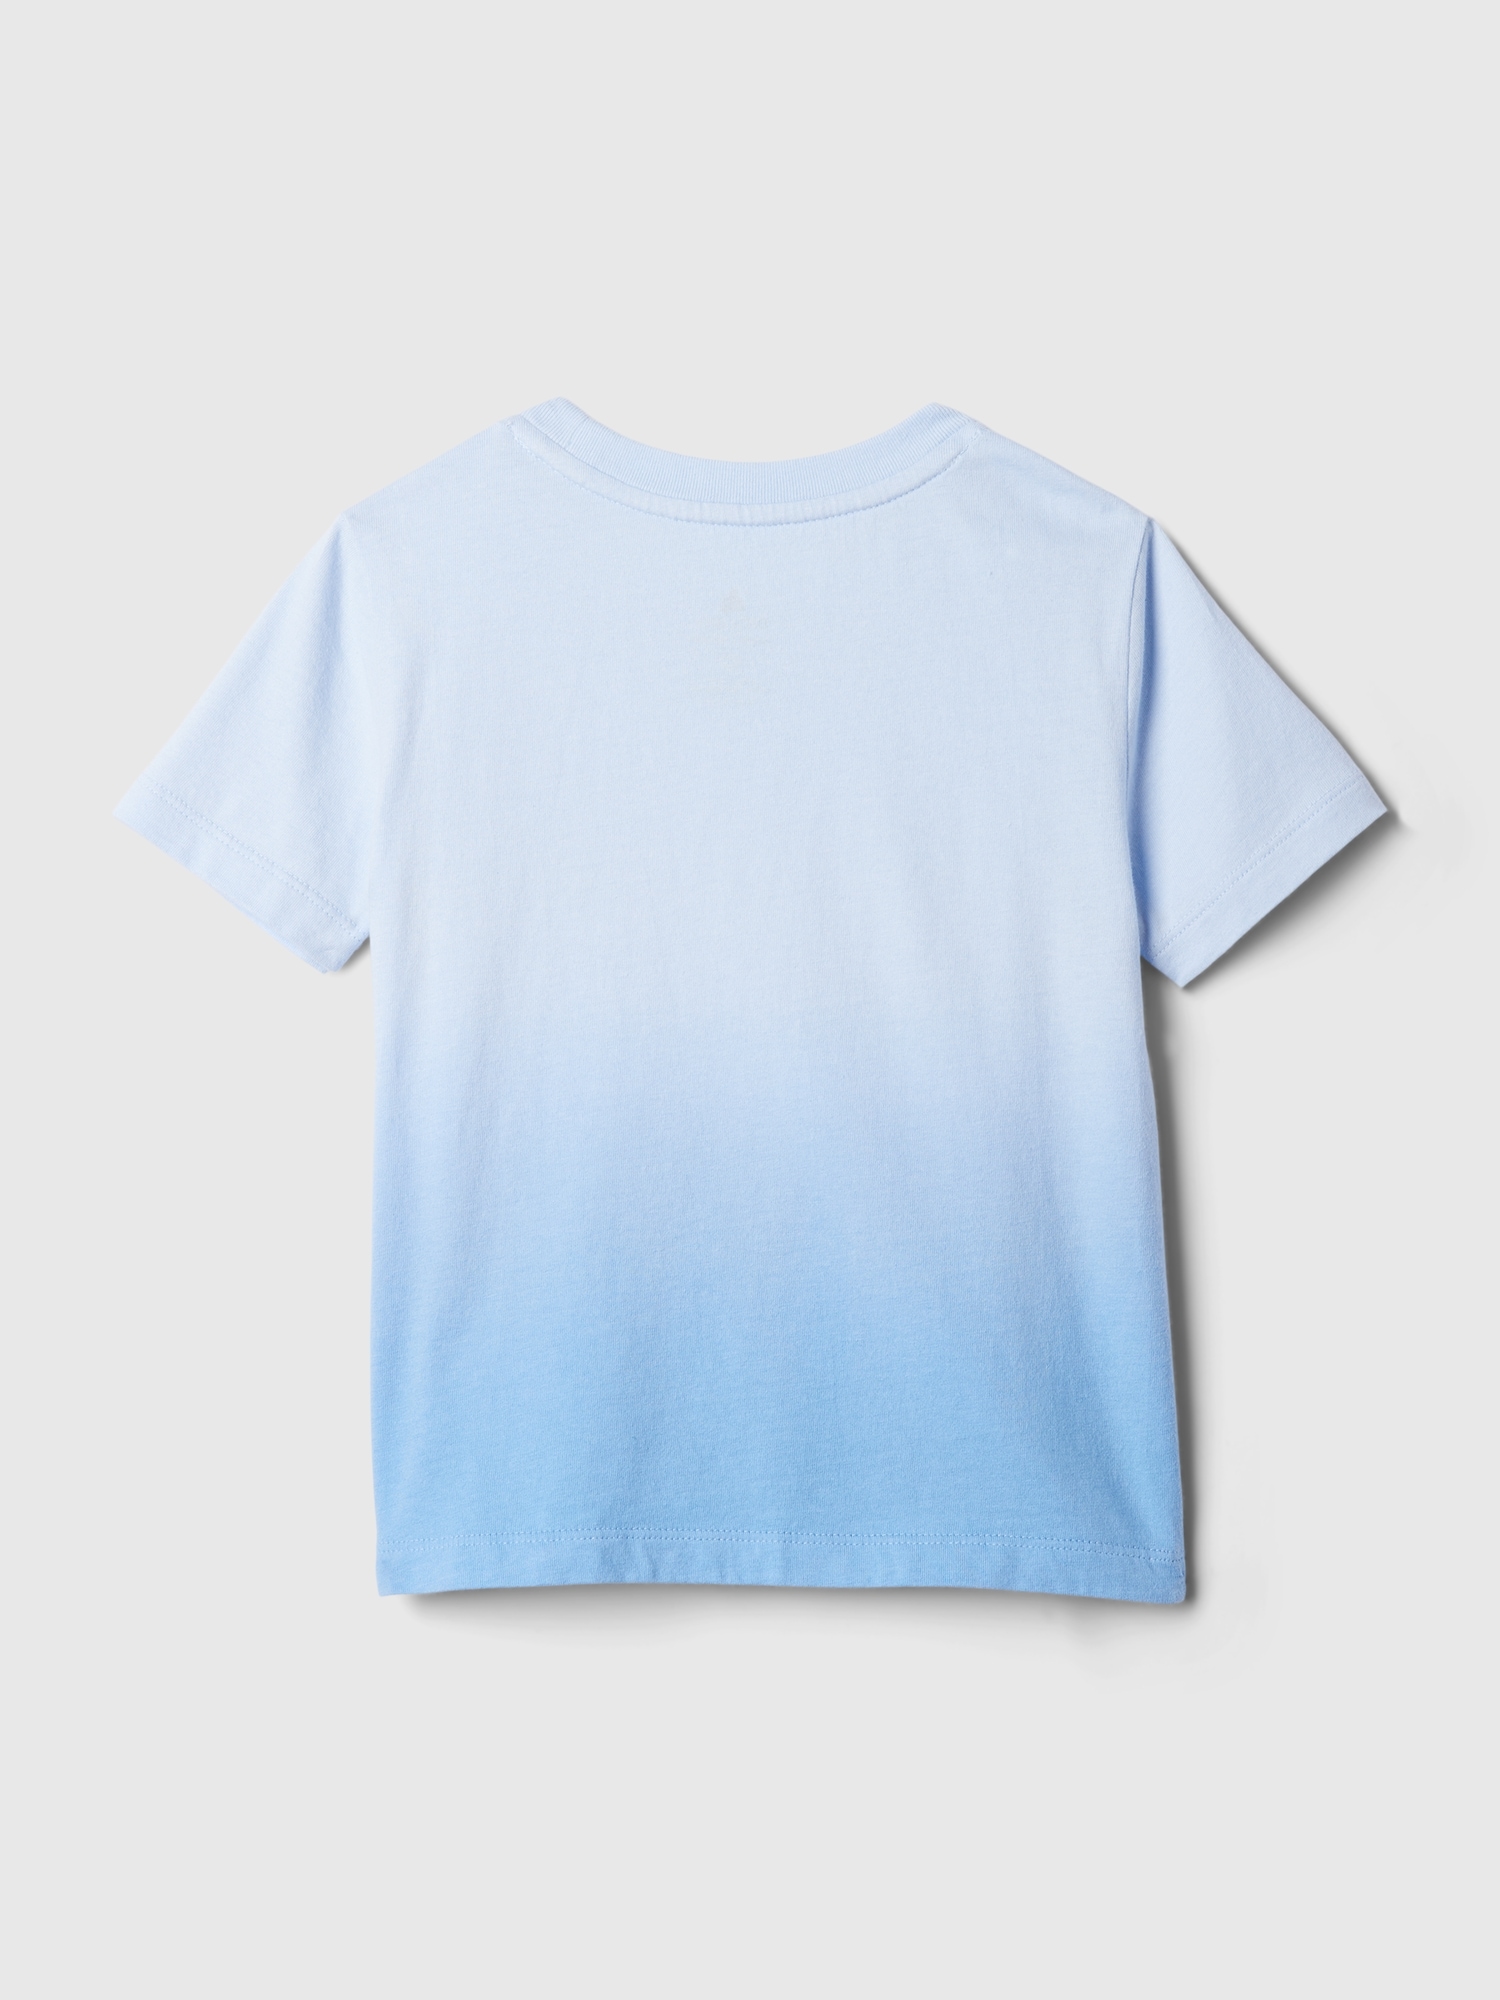 GAP Pale Blue Metallic Getaway Favorite Cotton T-shirt - Medium